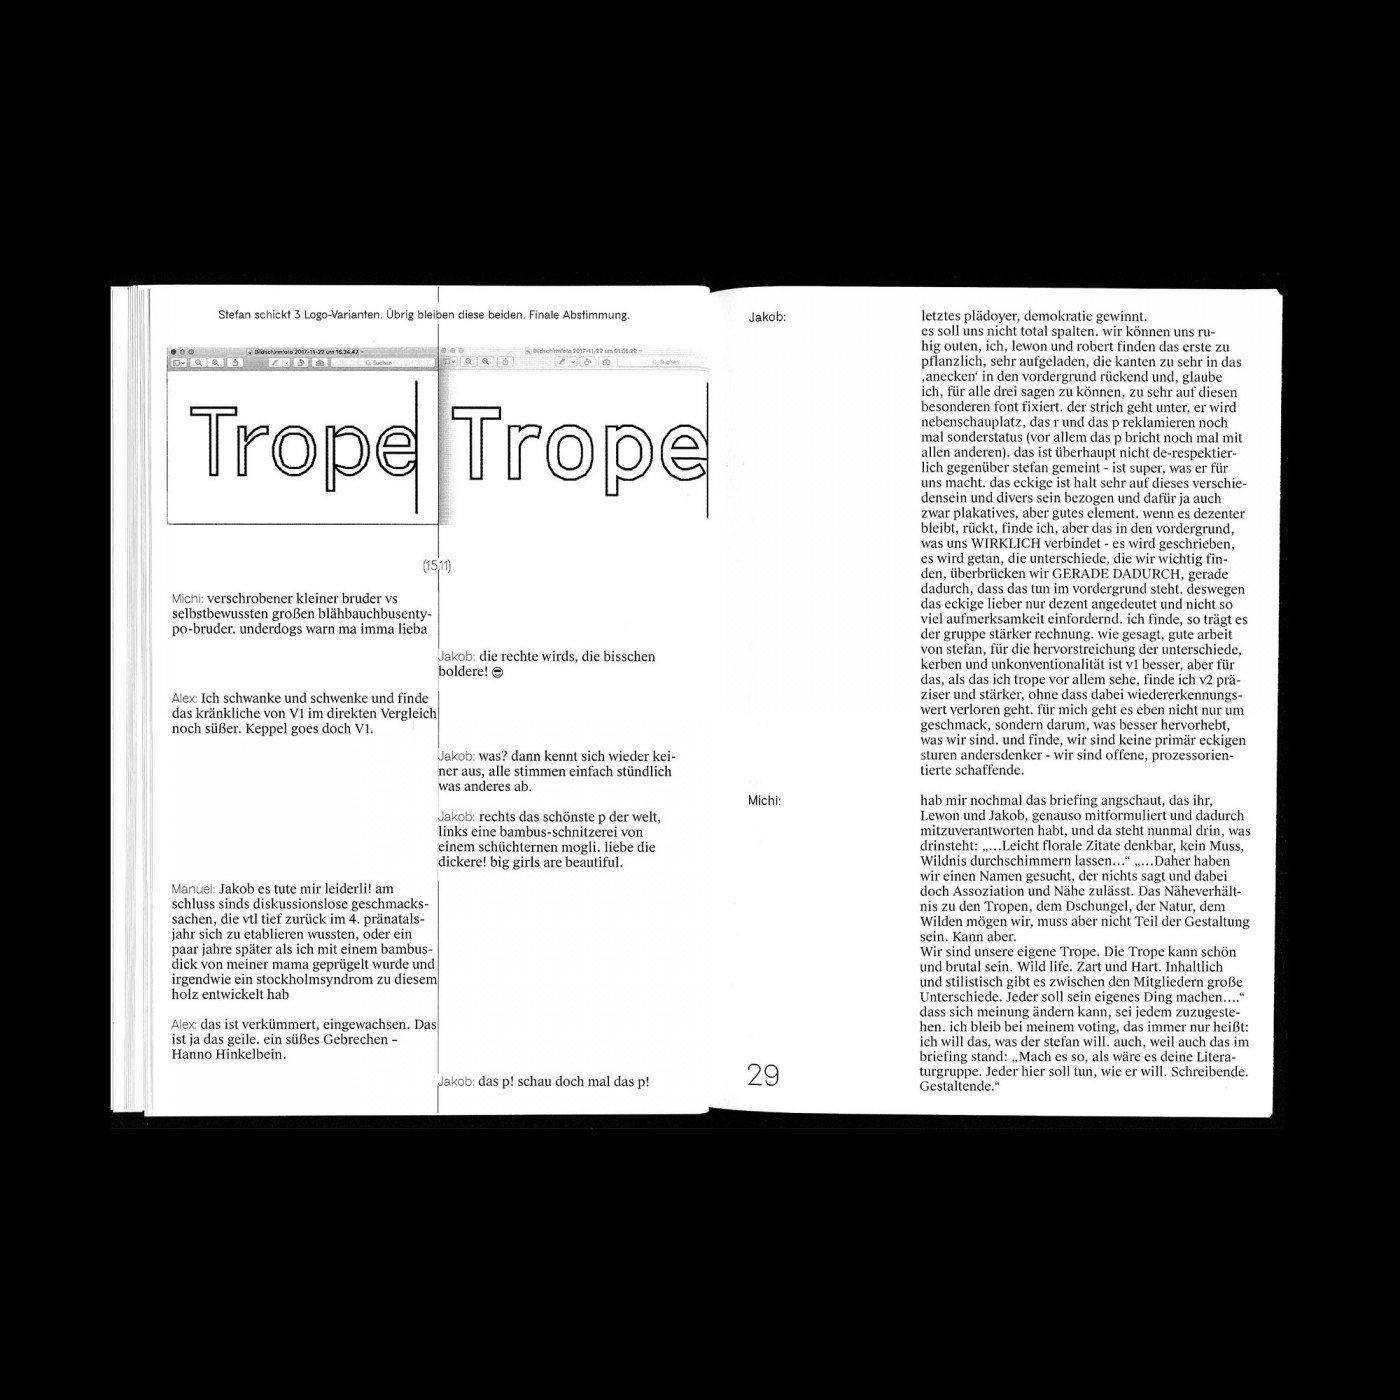 Trope-digichecksadness-6